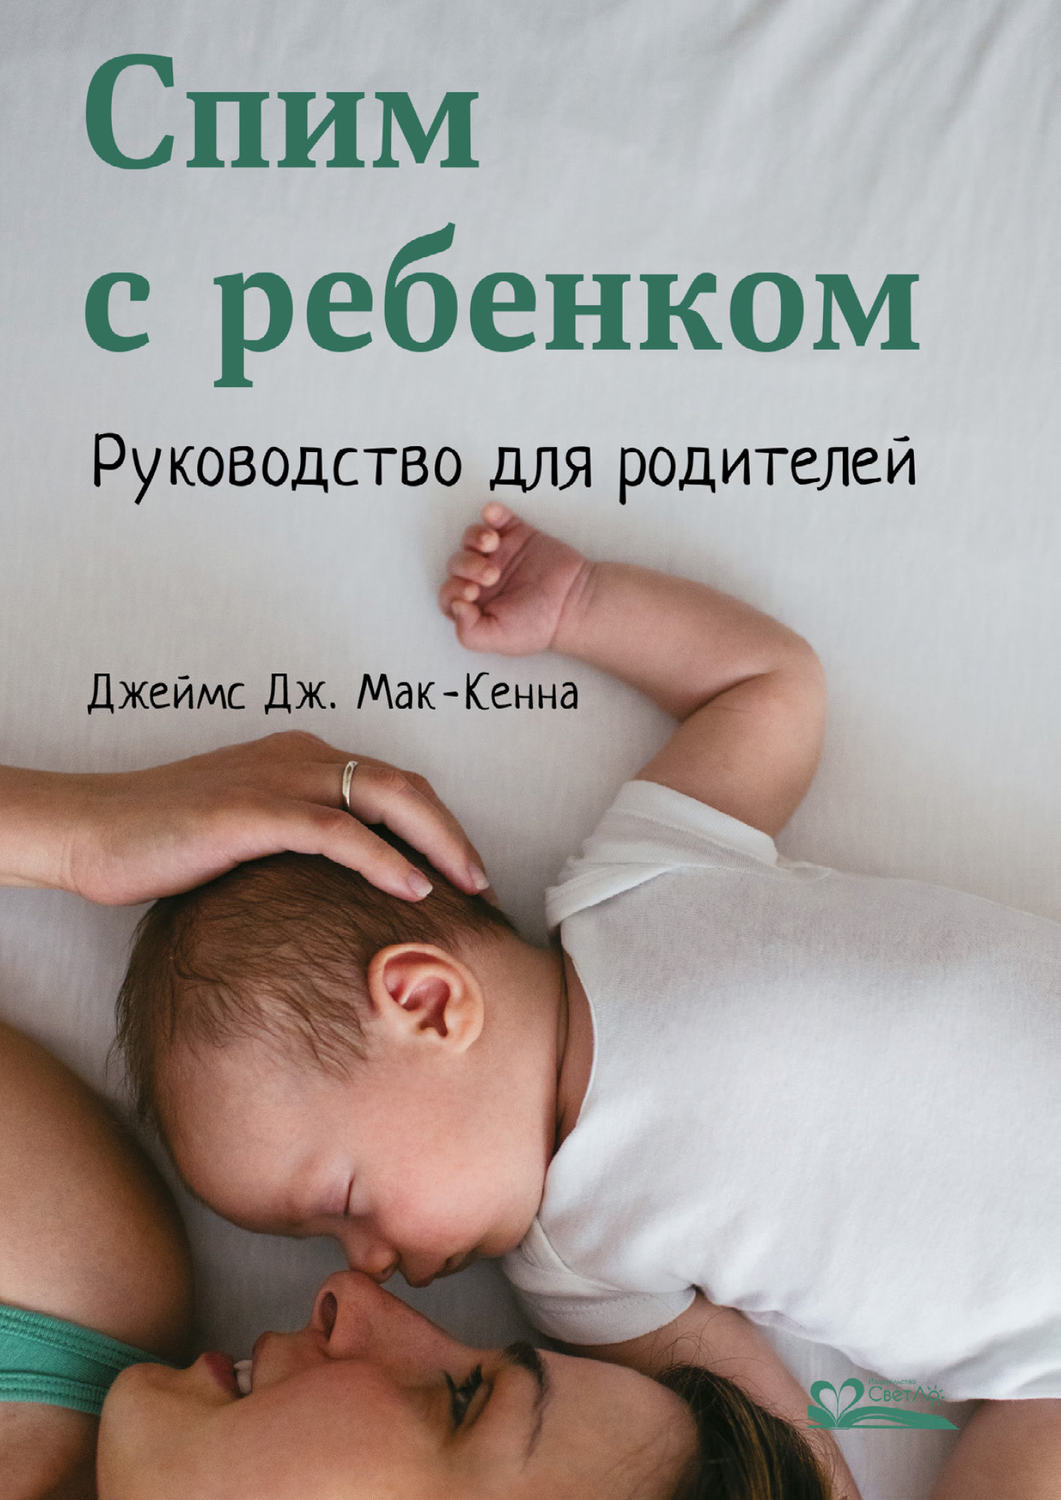 Спи малыш книга. Спим с ребенком руководство для родителей. Книги про сон для детей. Книга для родителей. Книга про детский сон.